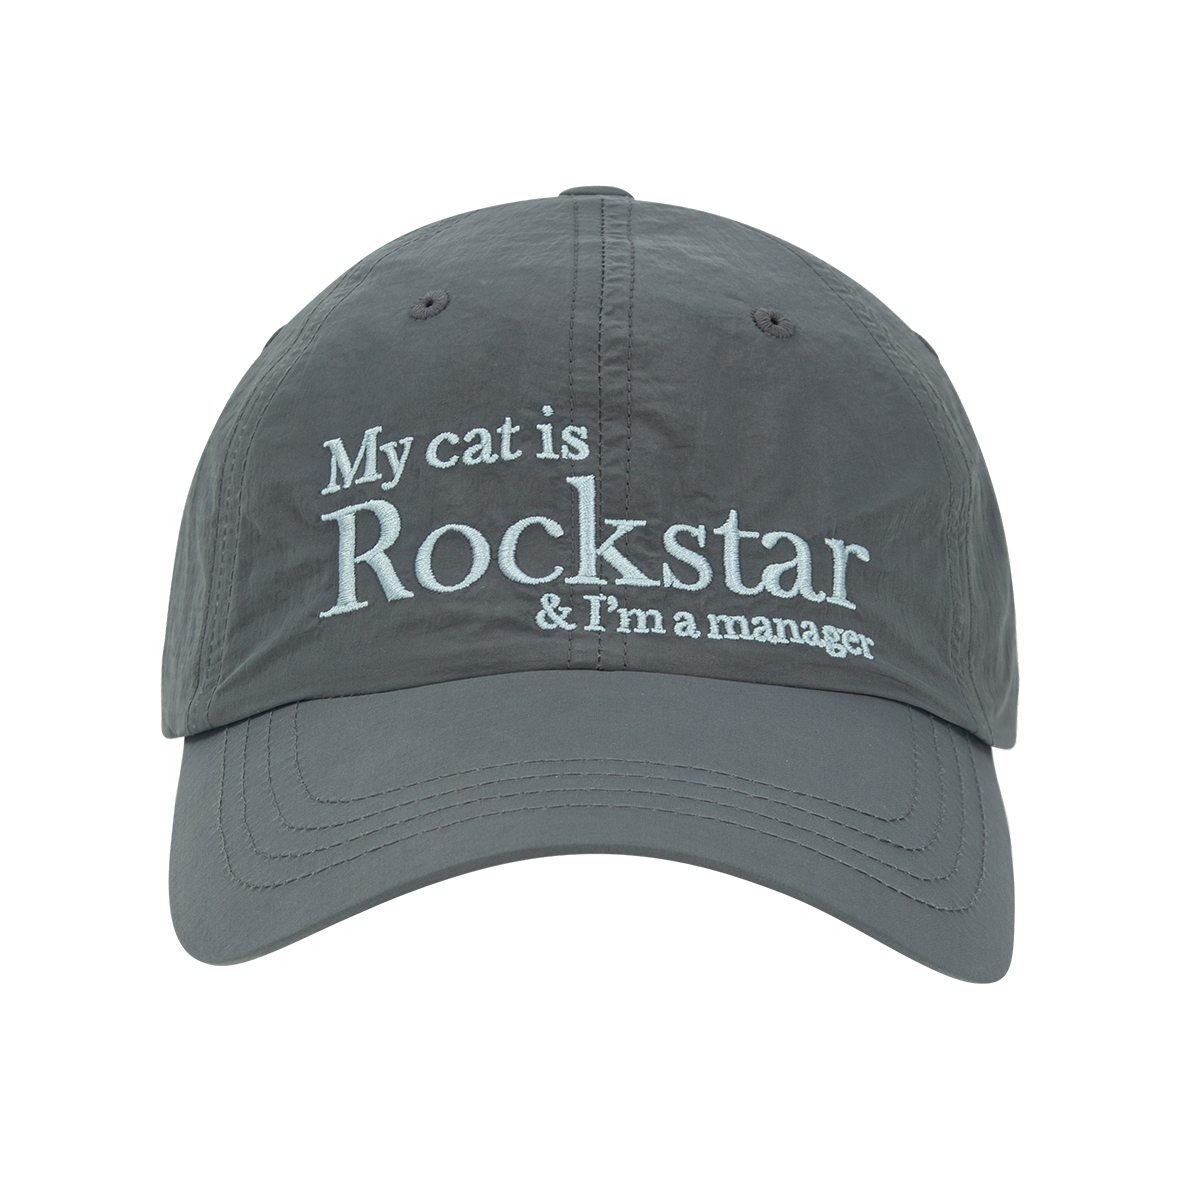 Rockstar cat Nylon cap (Charcoal)